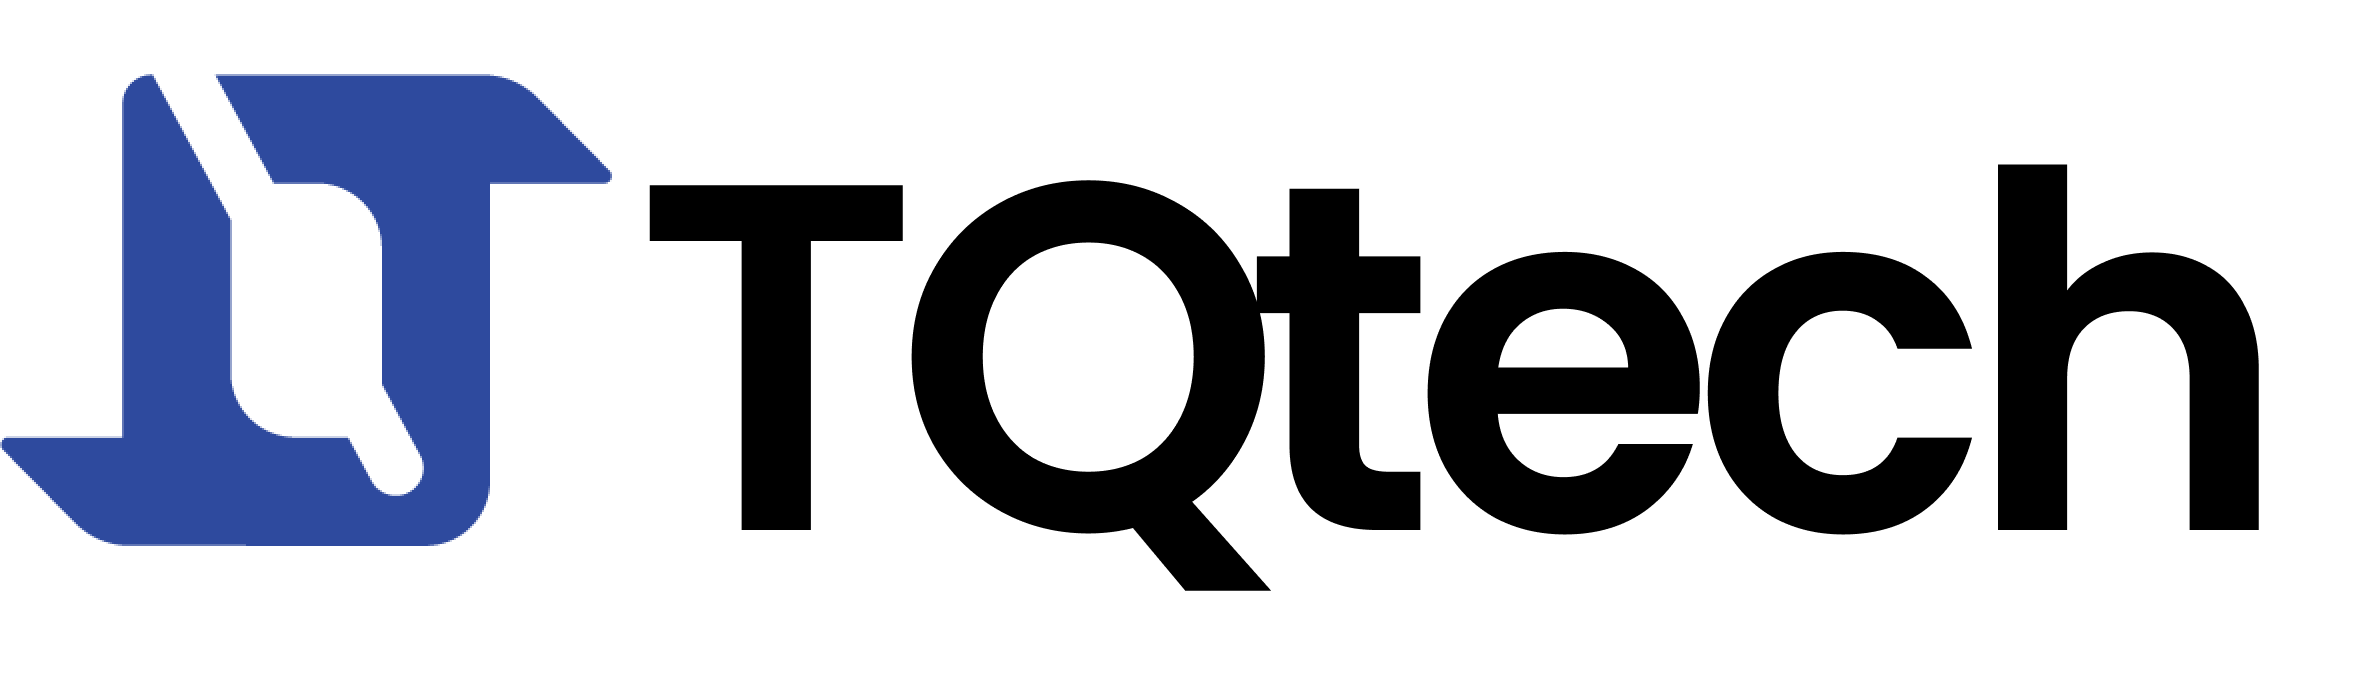 tqtech-logo-poppins